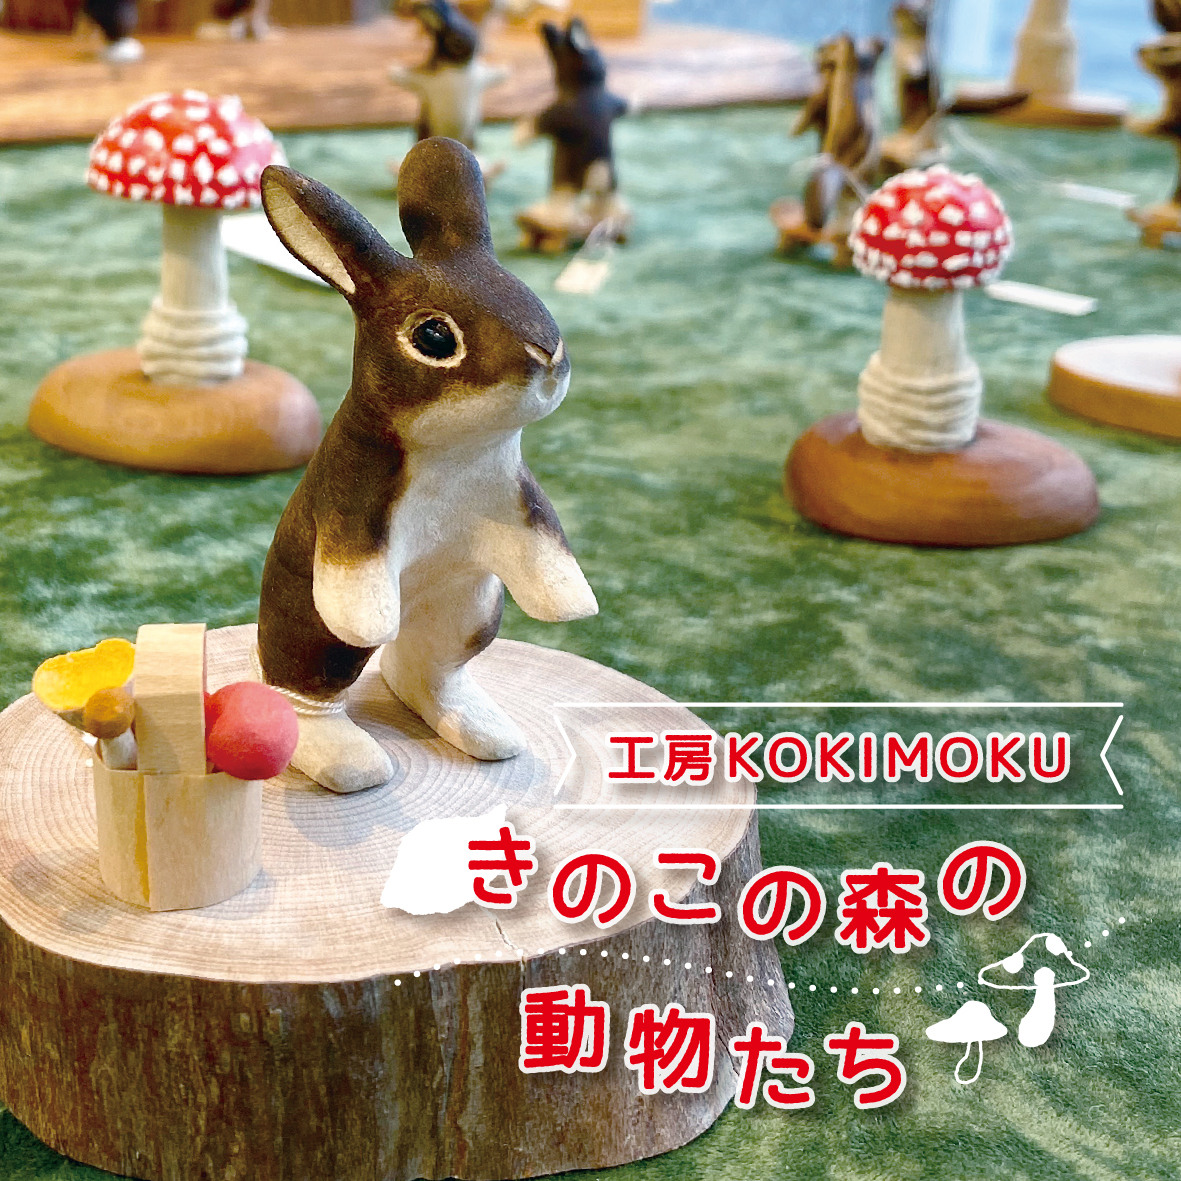 【イベント】工房KOKIMOKU「きのこの森の動物たち」